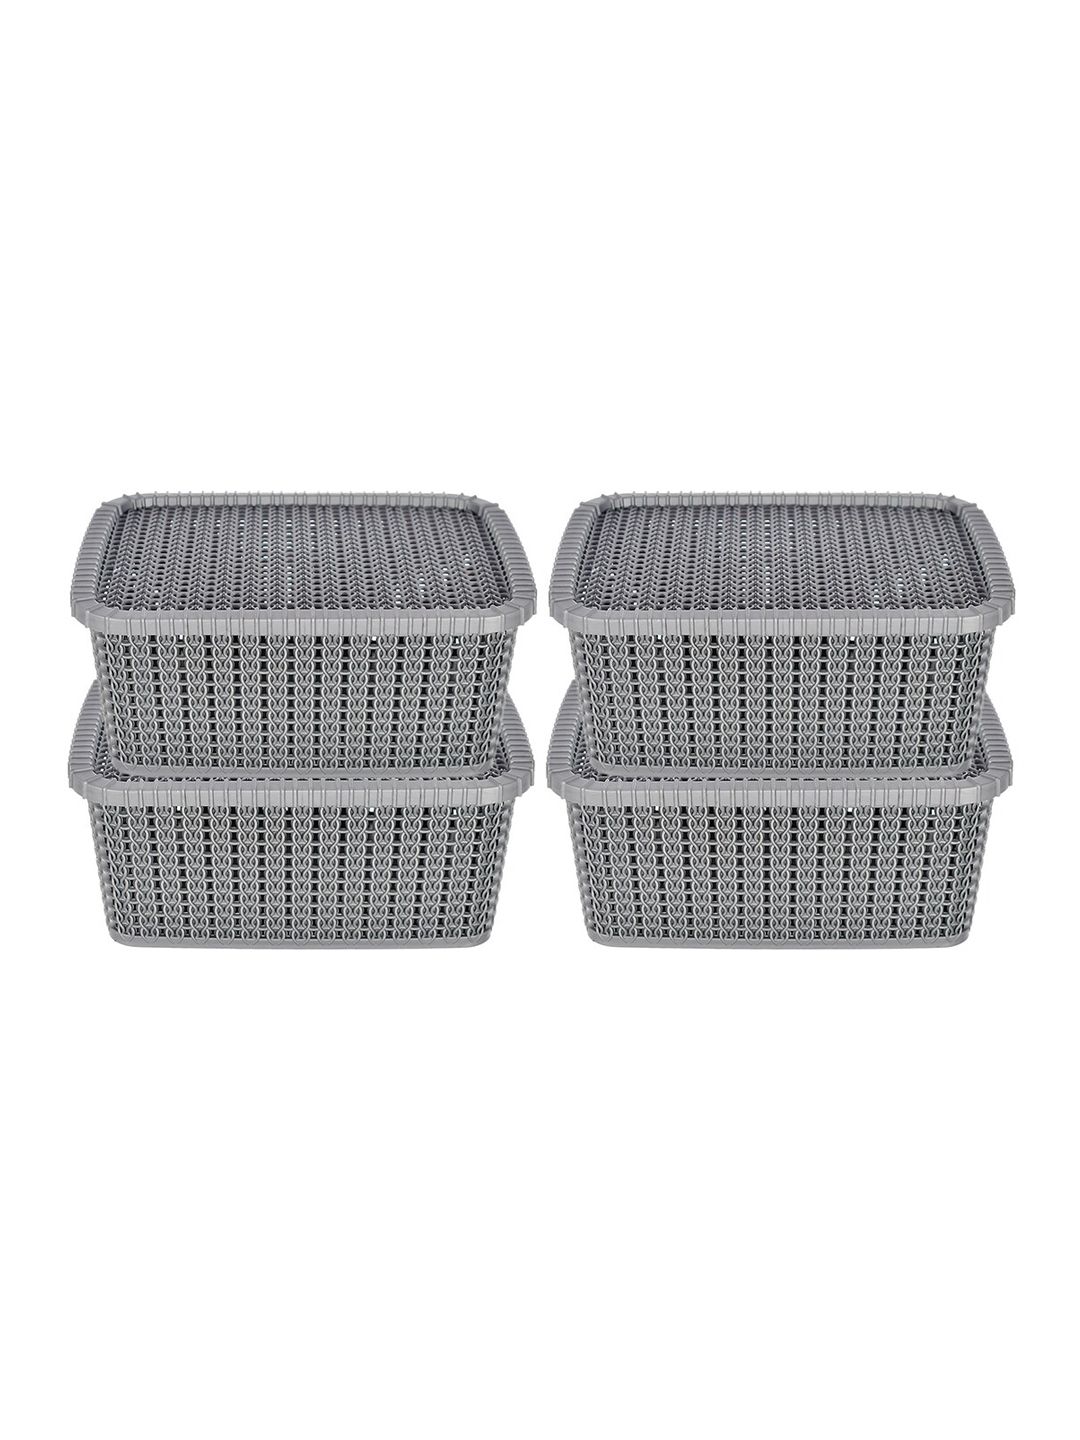 Kuber Industries Set of 4 Grey Textured Kitchen Storage Basket Price in India